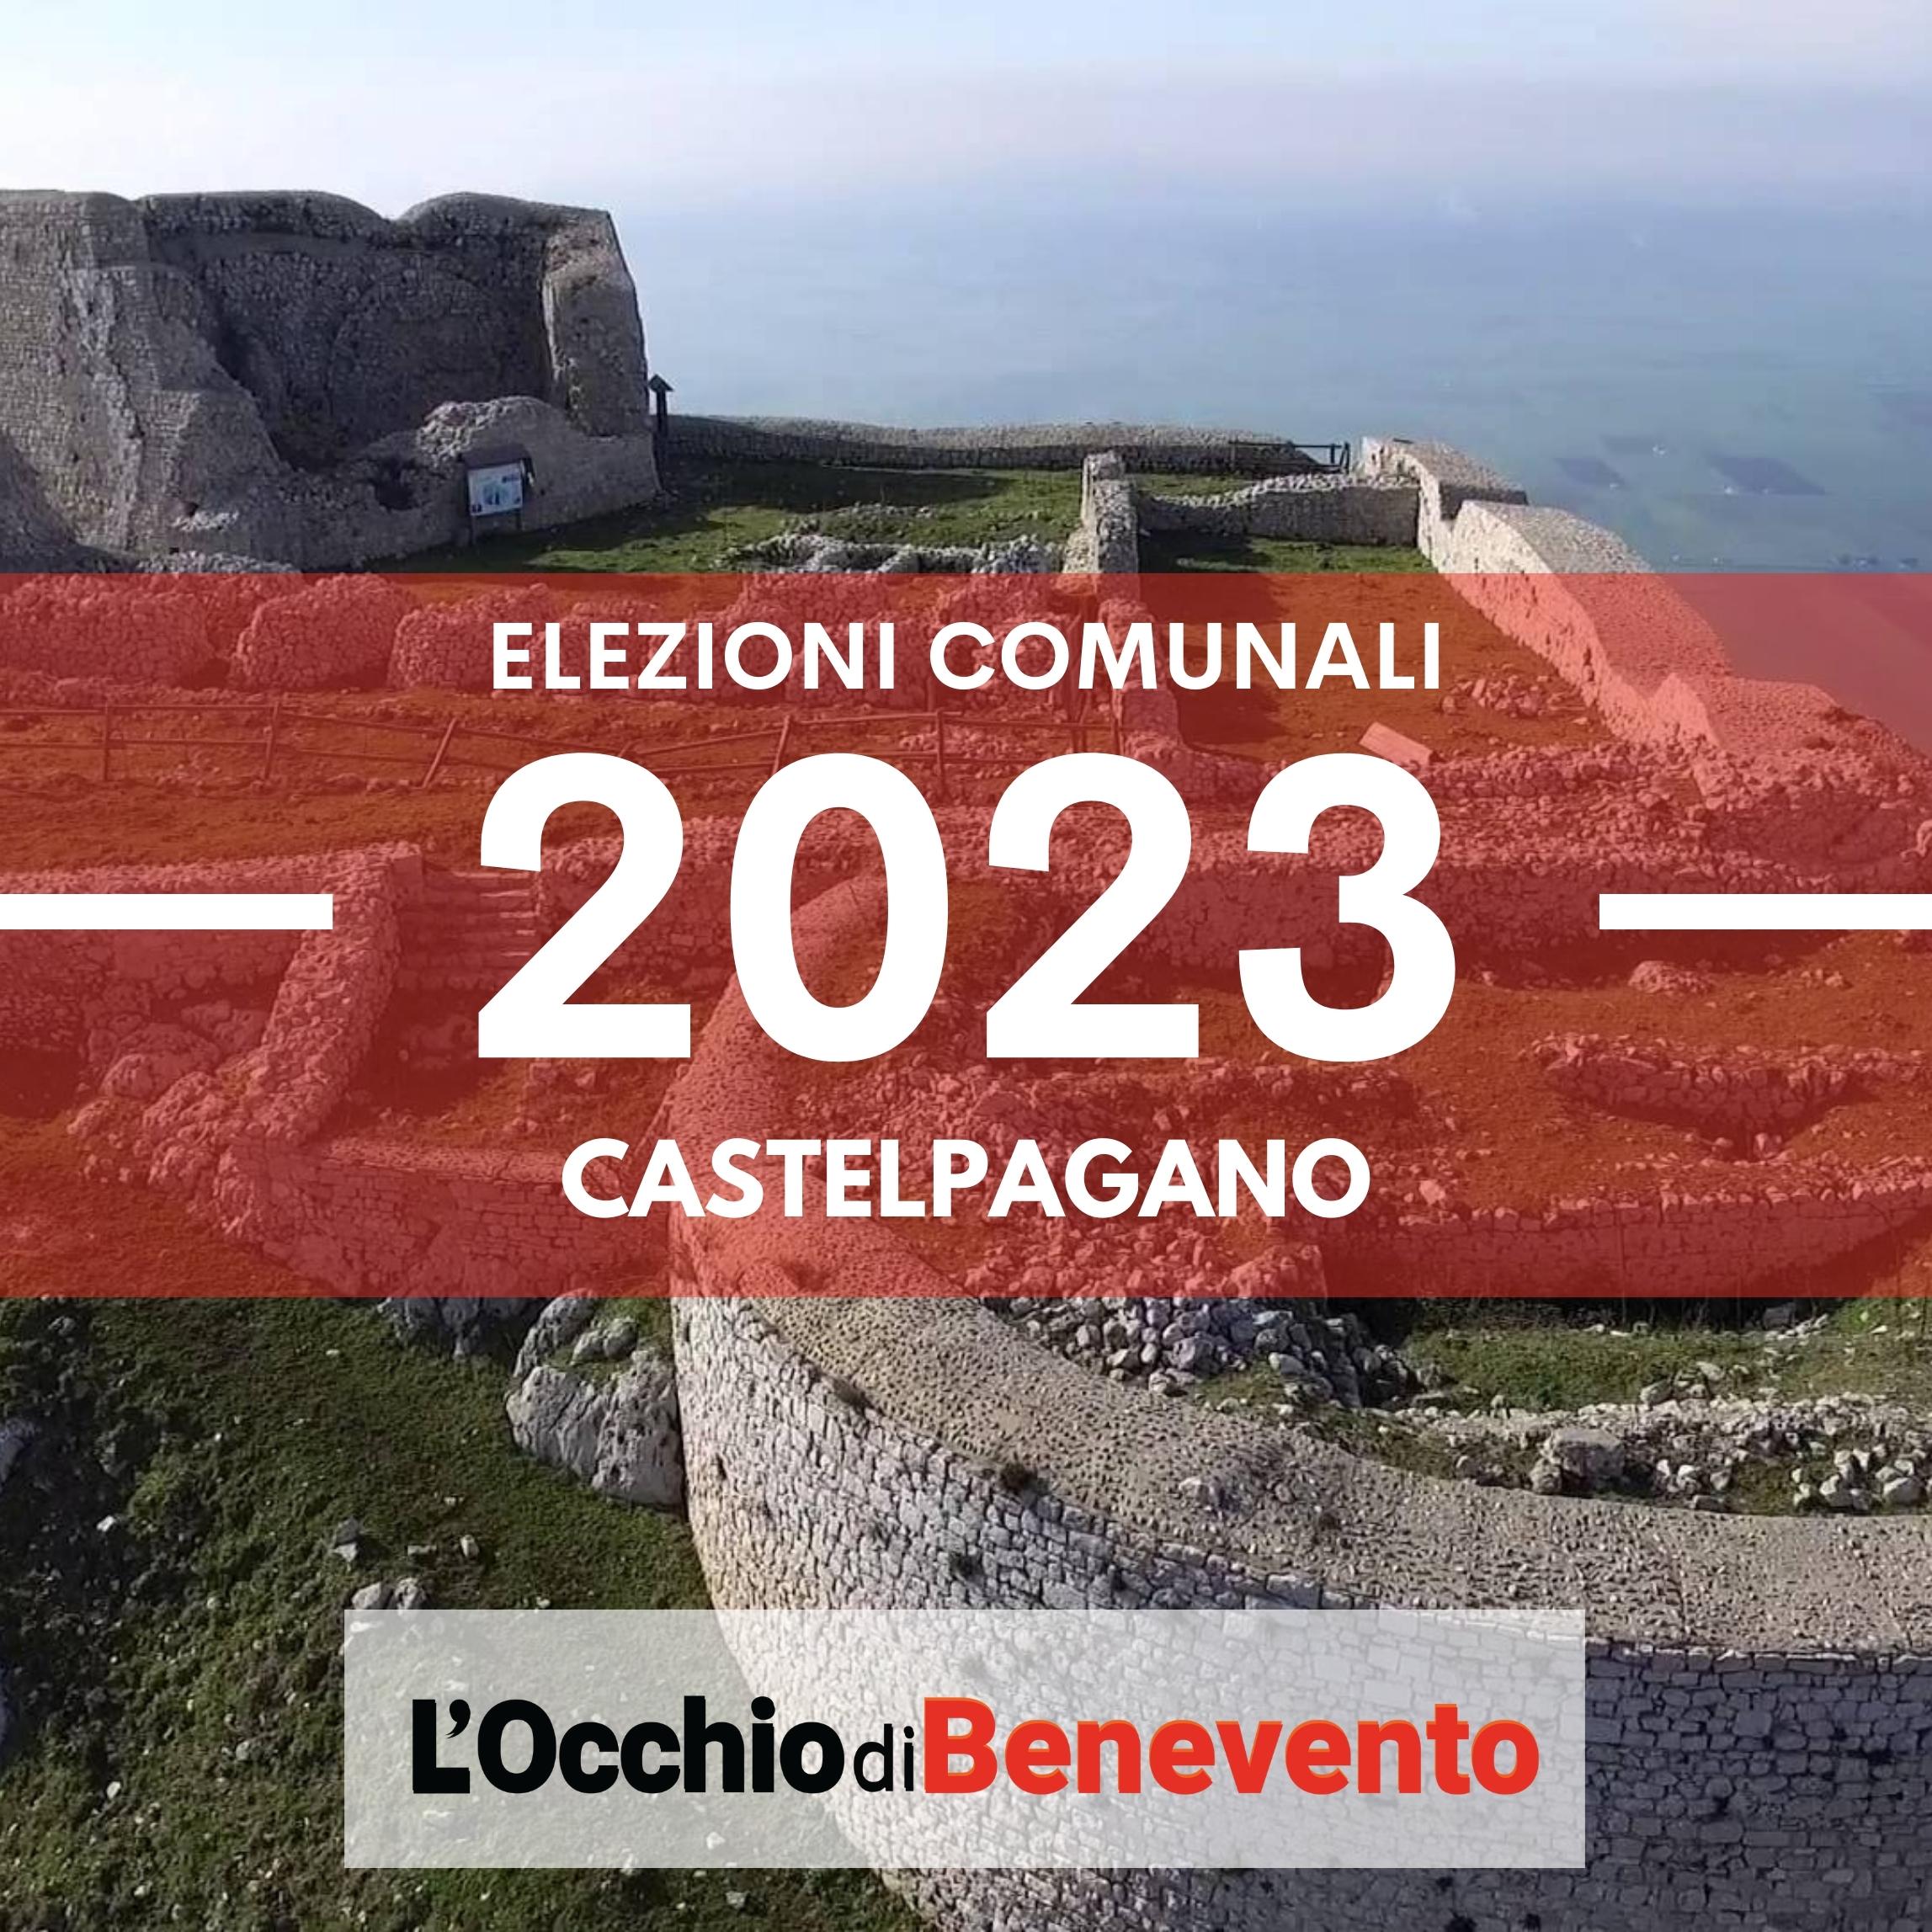 Elezioni comunali 2023 Castelpagano liste candidati